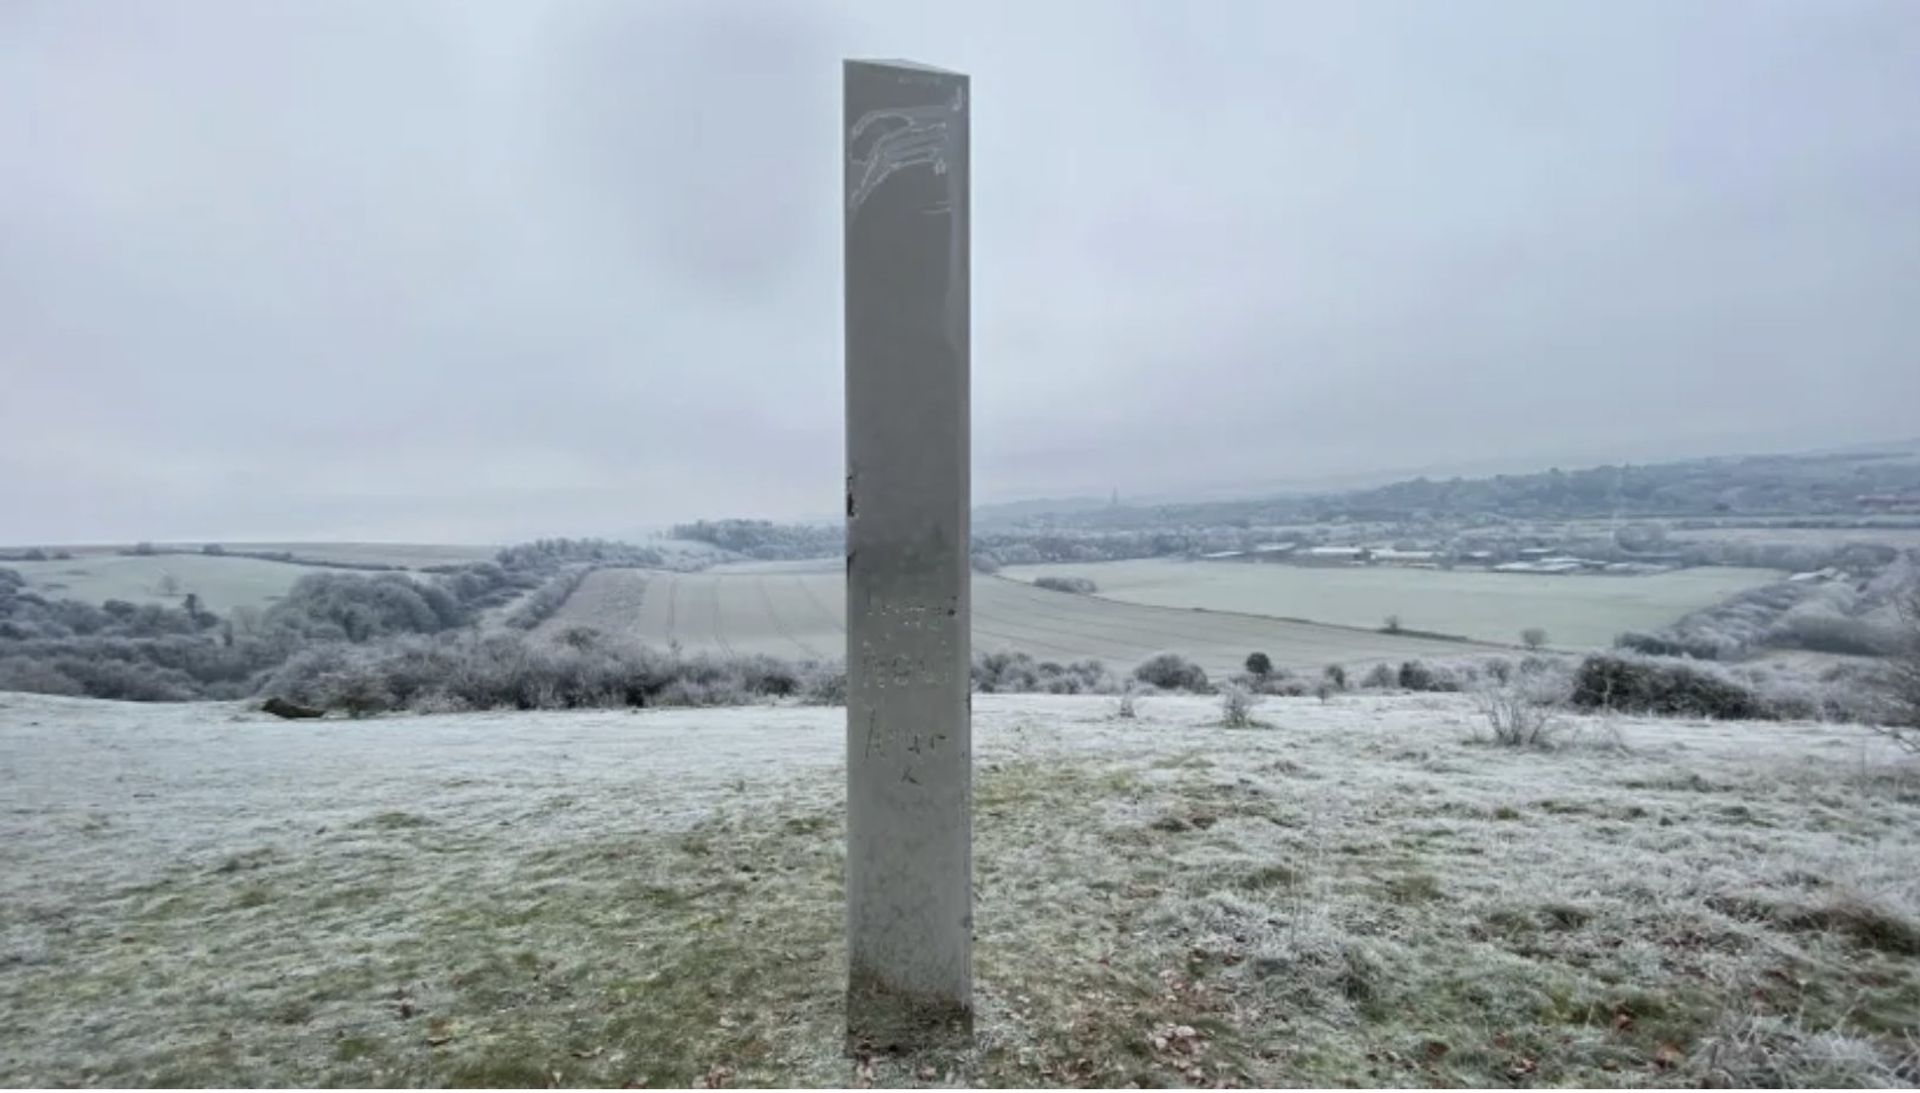 The mystery monolith sited near Salisbury courtesy Jon Scammell